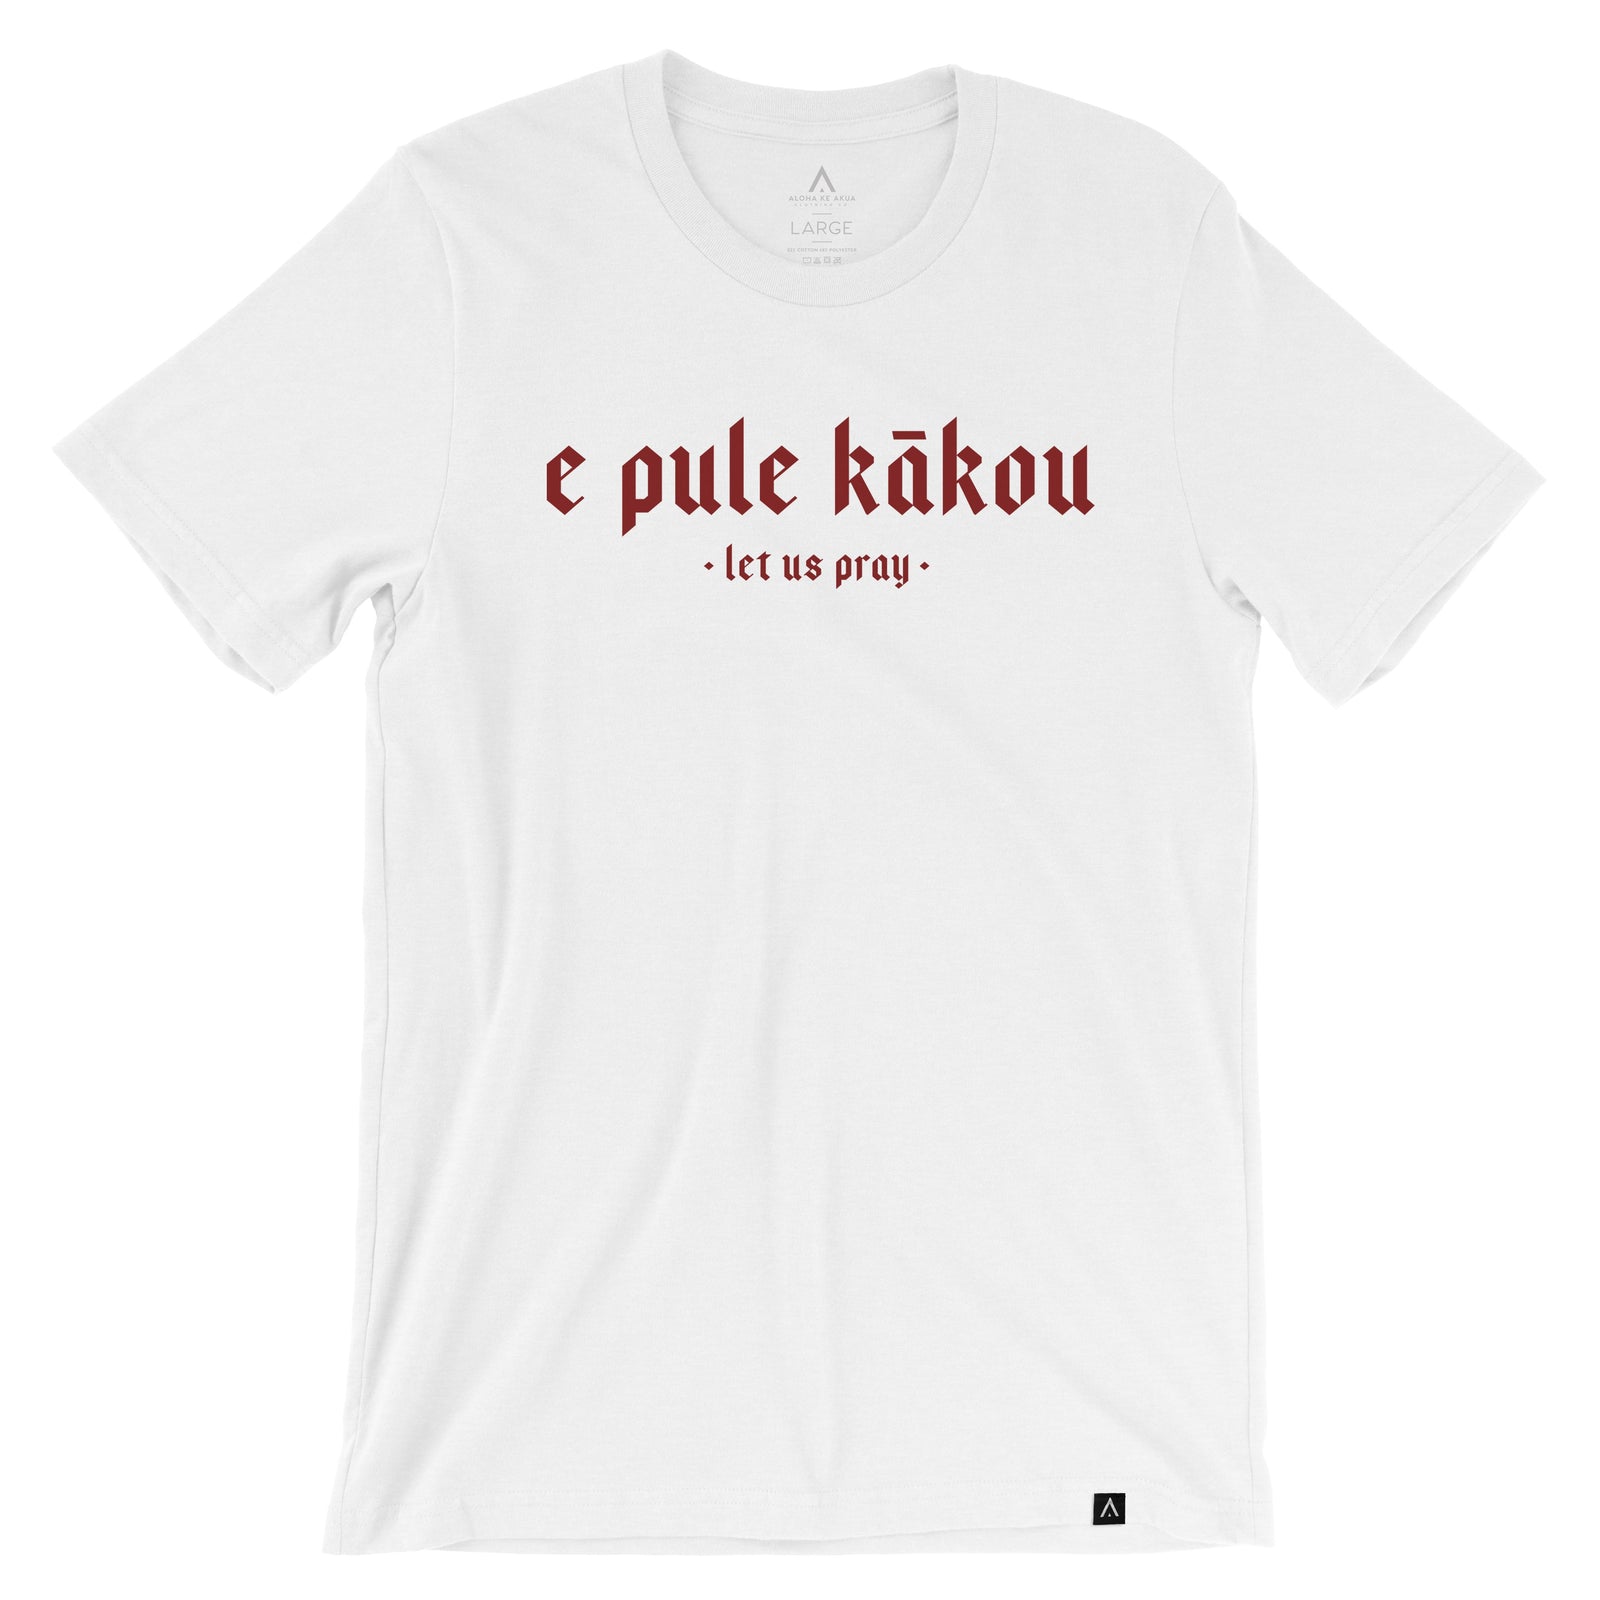 Pop-Up Mākeke - Aloha Ke Akua Clothing - E Pule Kākou 2.0 Men's Short Sleeve T-Shirt - White